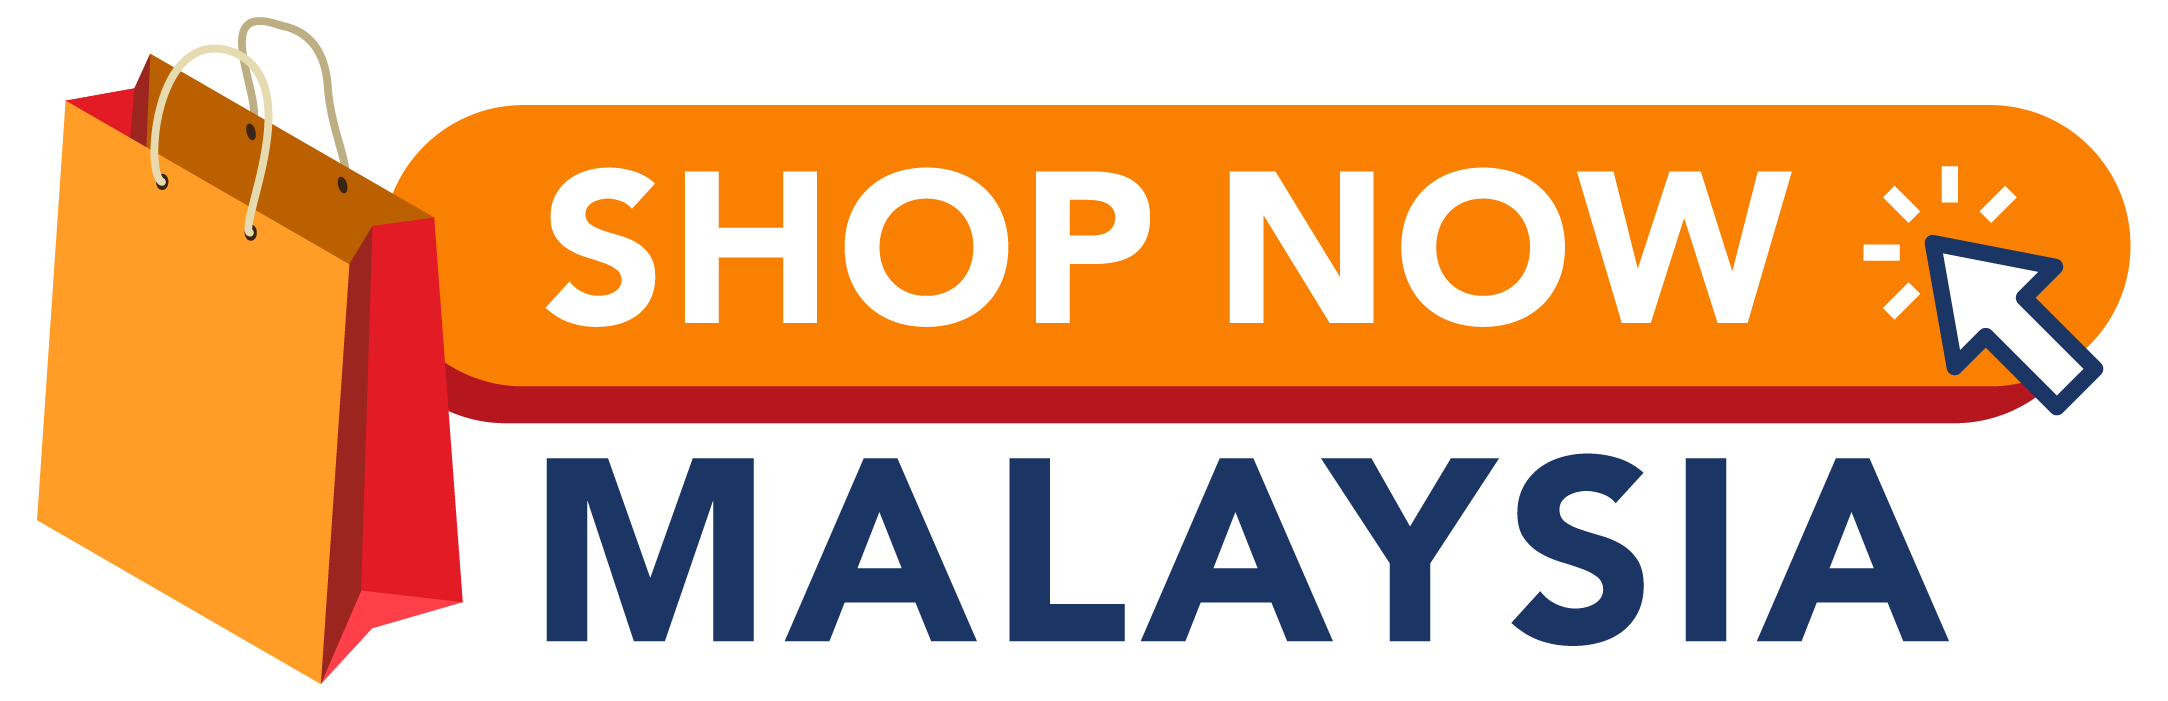 Shopping Malaysia_Logo Design_website_v1-01